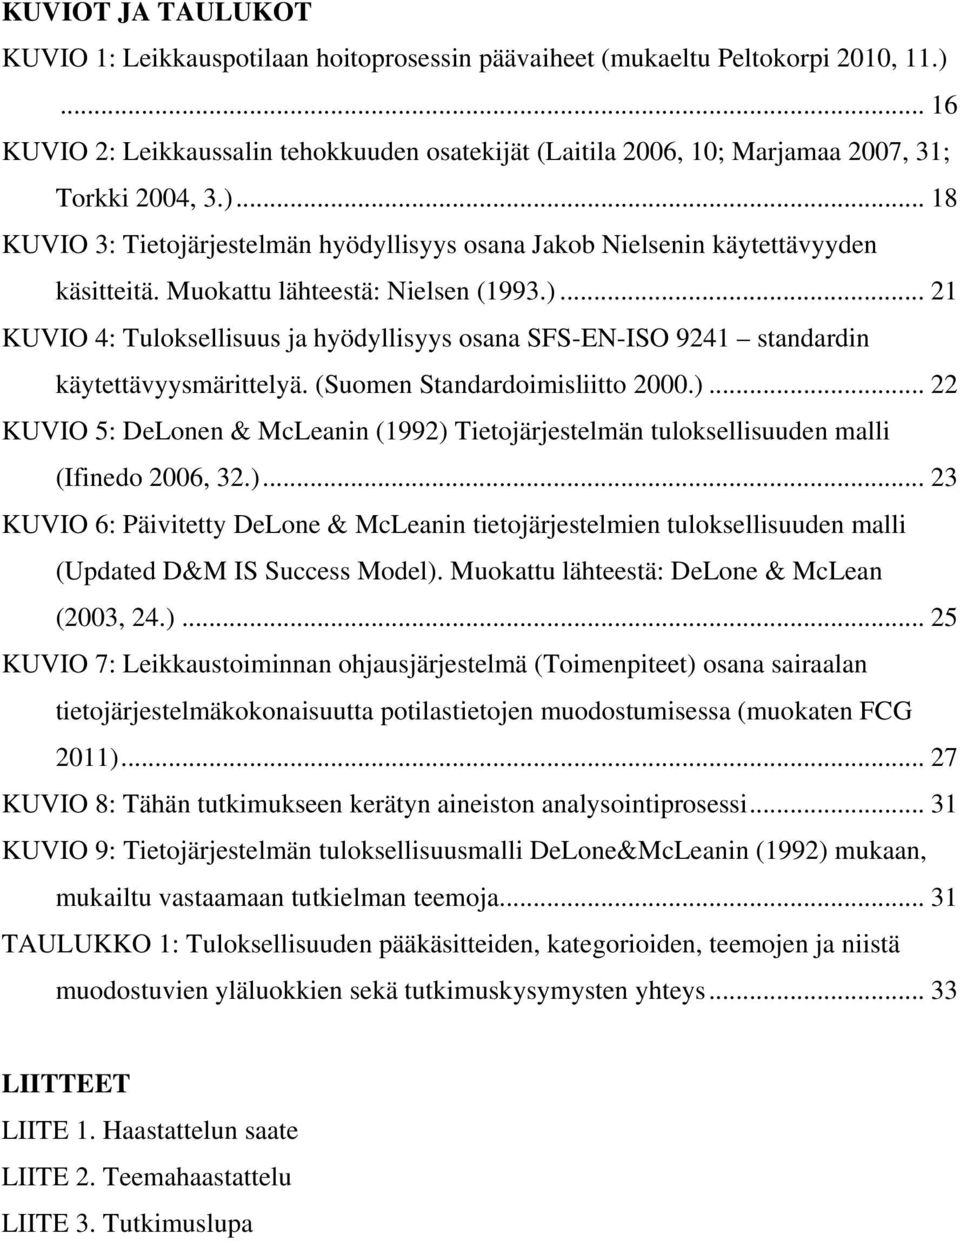 Muokattu lähteestä: Nielsen (1993.)... 21 KUVIO 4: Tuloksellisuus ja hyödyllisyys osana SFS-EN-ISO 9241 standardin käytettävyysmärittelyä. (Suomen Standardoimisliitto 2000.)... 22 KUVIO 5: DeLonen & McLeanin (1992) Tietojärjestelmän tuloksellisuuden malli (Ifinedo 2006, 32.